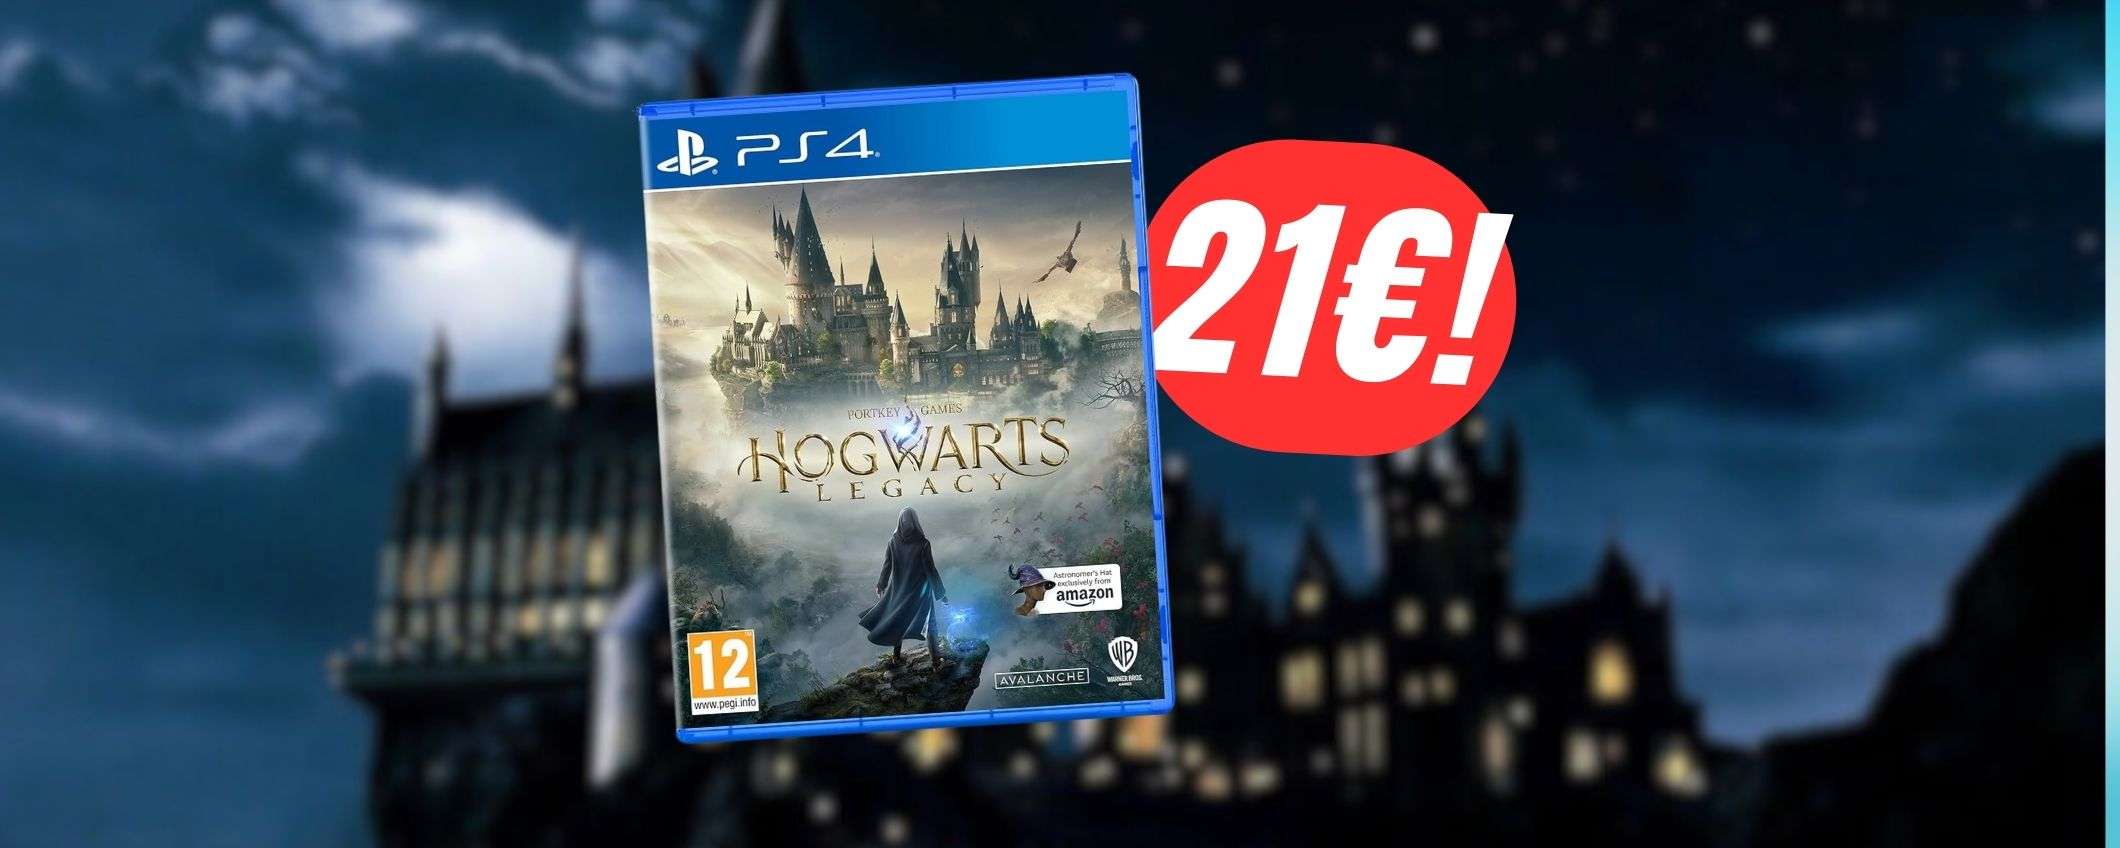 Hogwarts Legacy a 21€ è imperdibile: vivi la magia al PREZZO più BASSO di sempre!